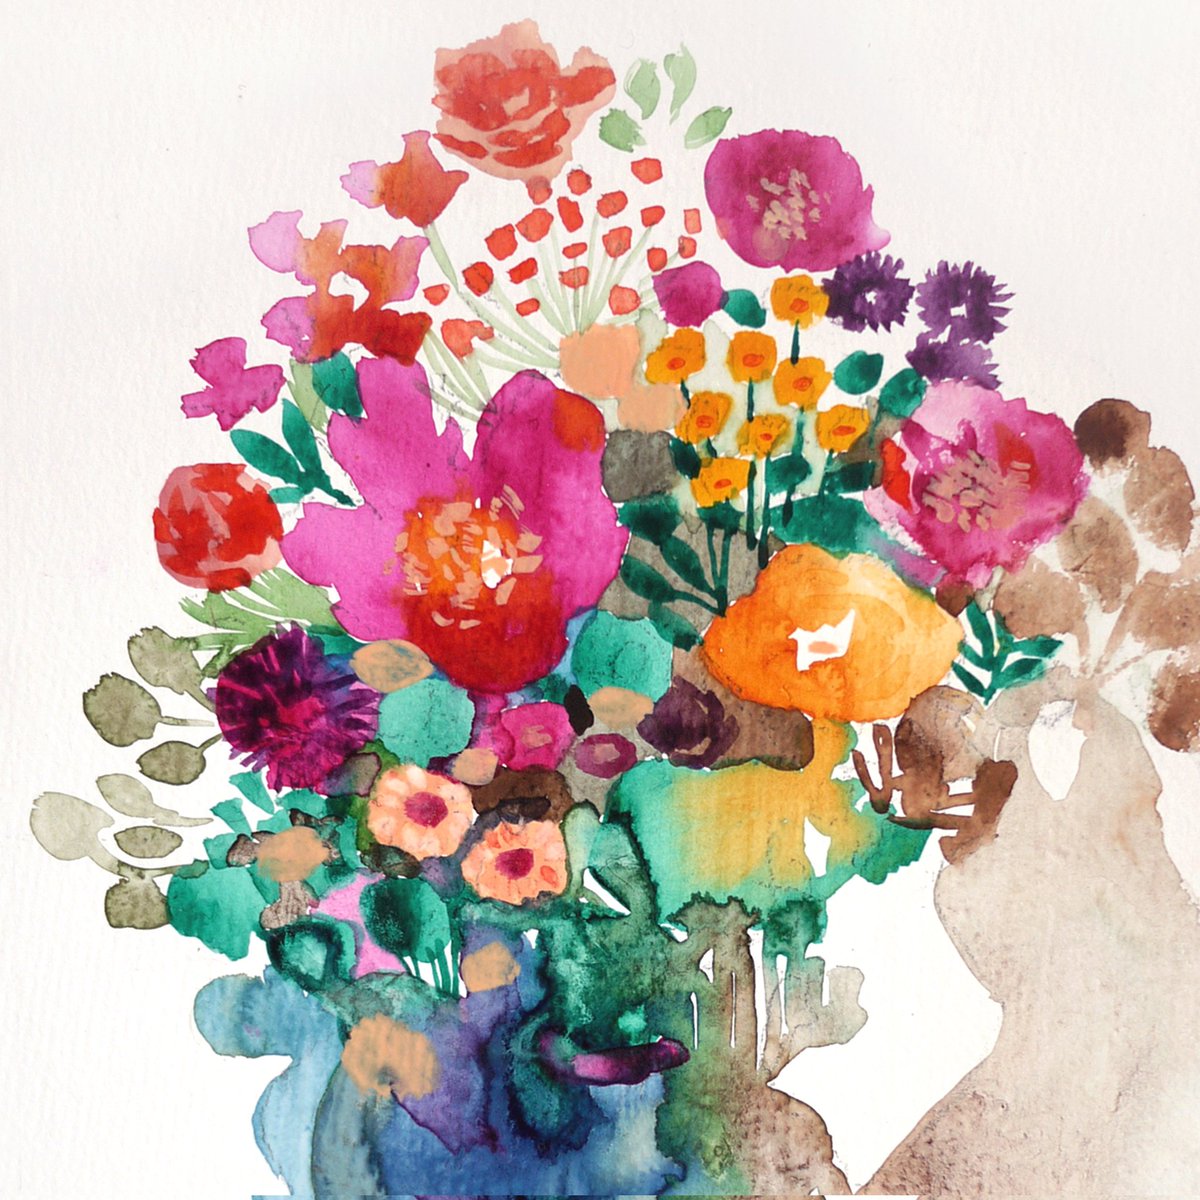 「もうすぐ春ですね。今日は花の種を蒔きました#水彩画 」|車谷 典子のイラスト